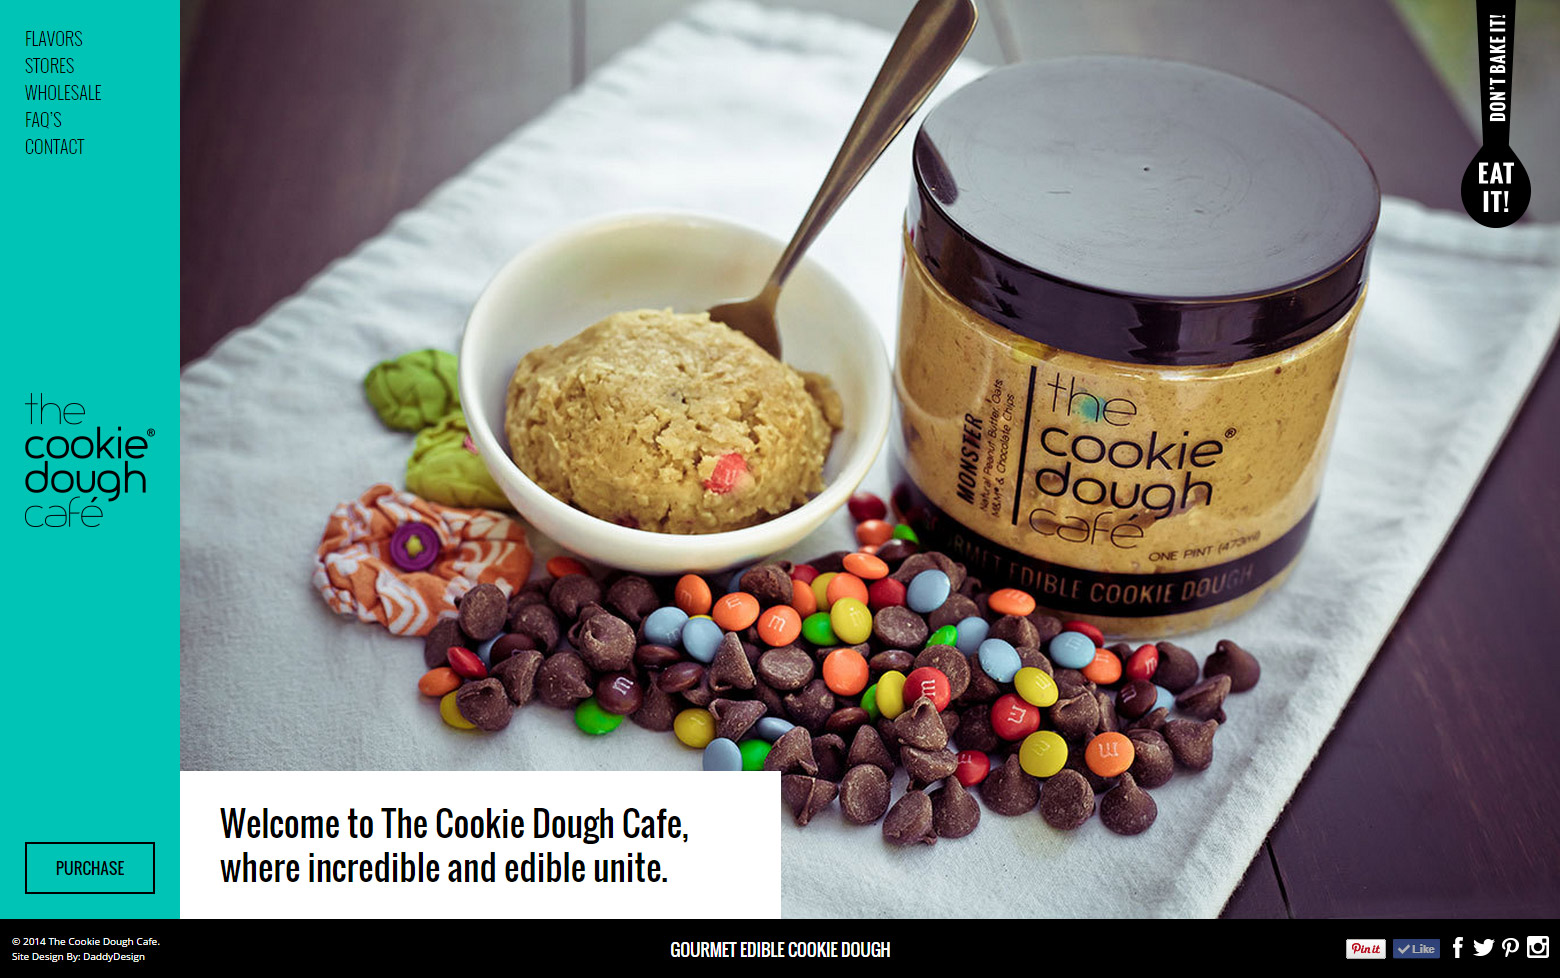 Gourmet Edible Cookie Dough